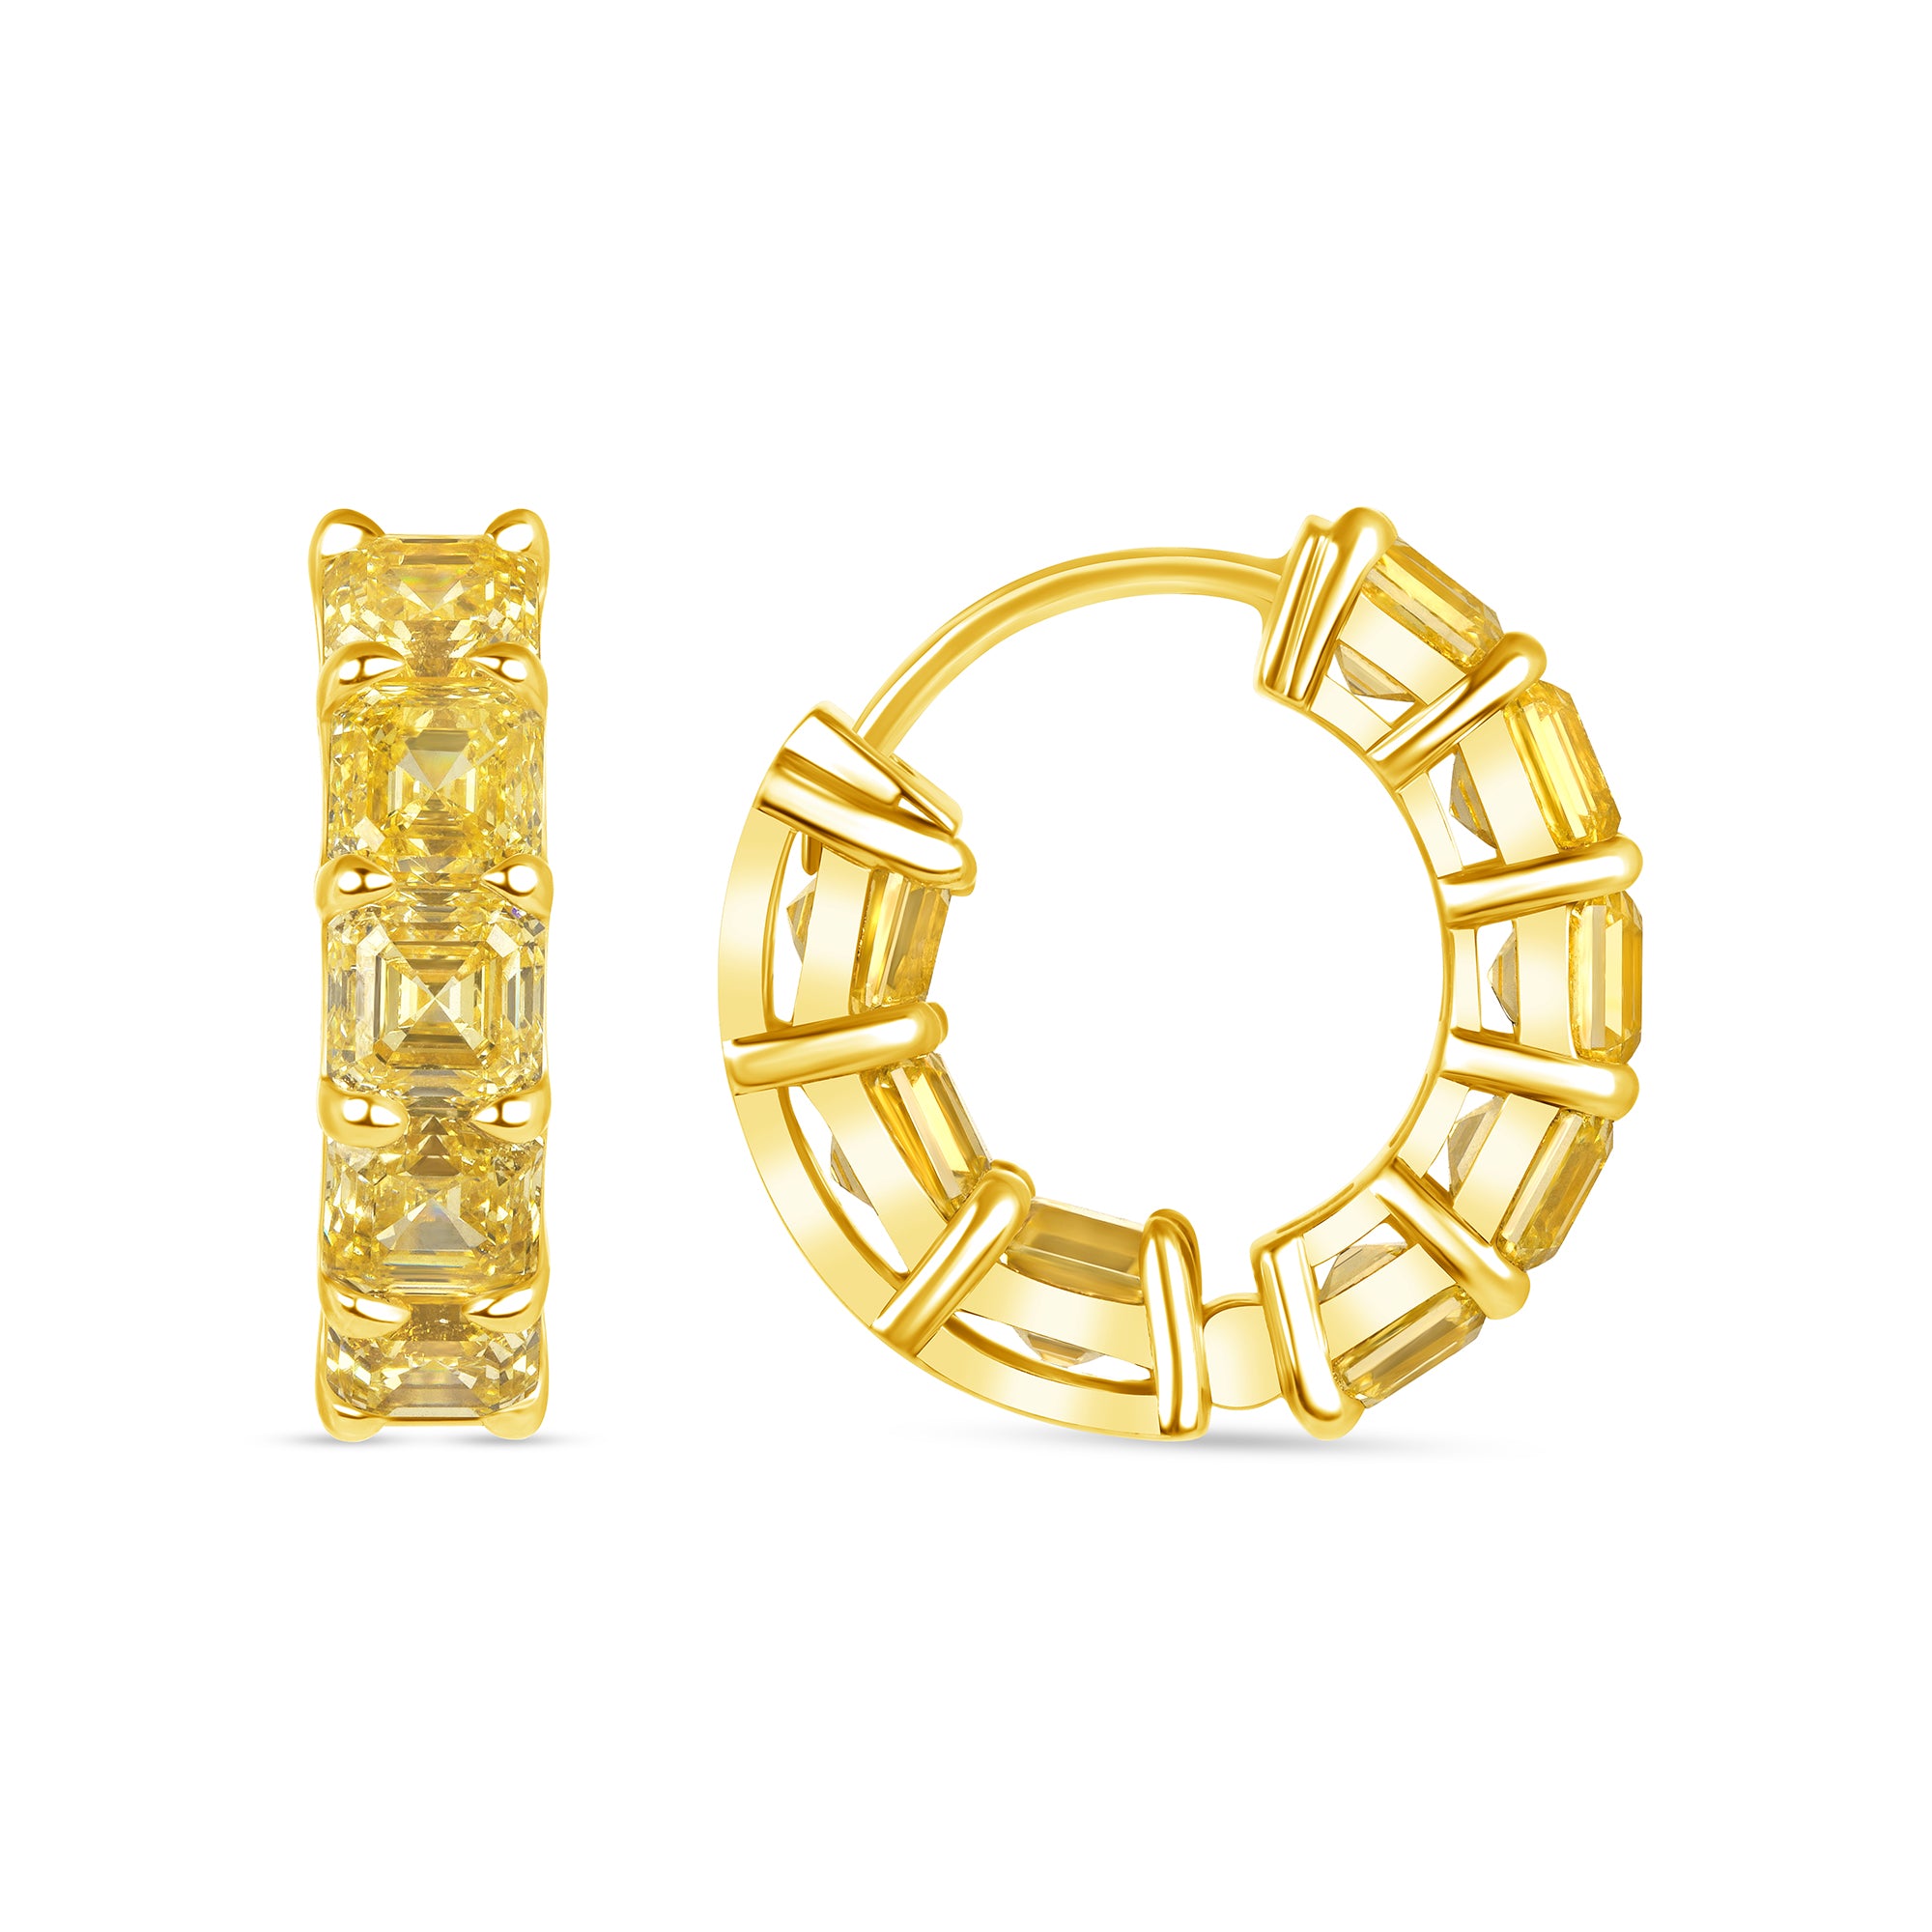 Asscher Cut Fancy Yellow Diamond Huggie Hoops Earrings in 18 Karat Yellow Gold